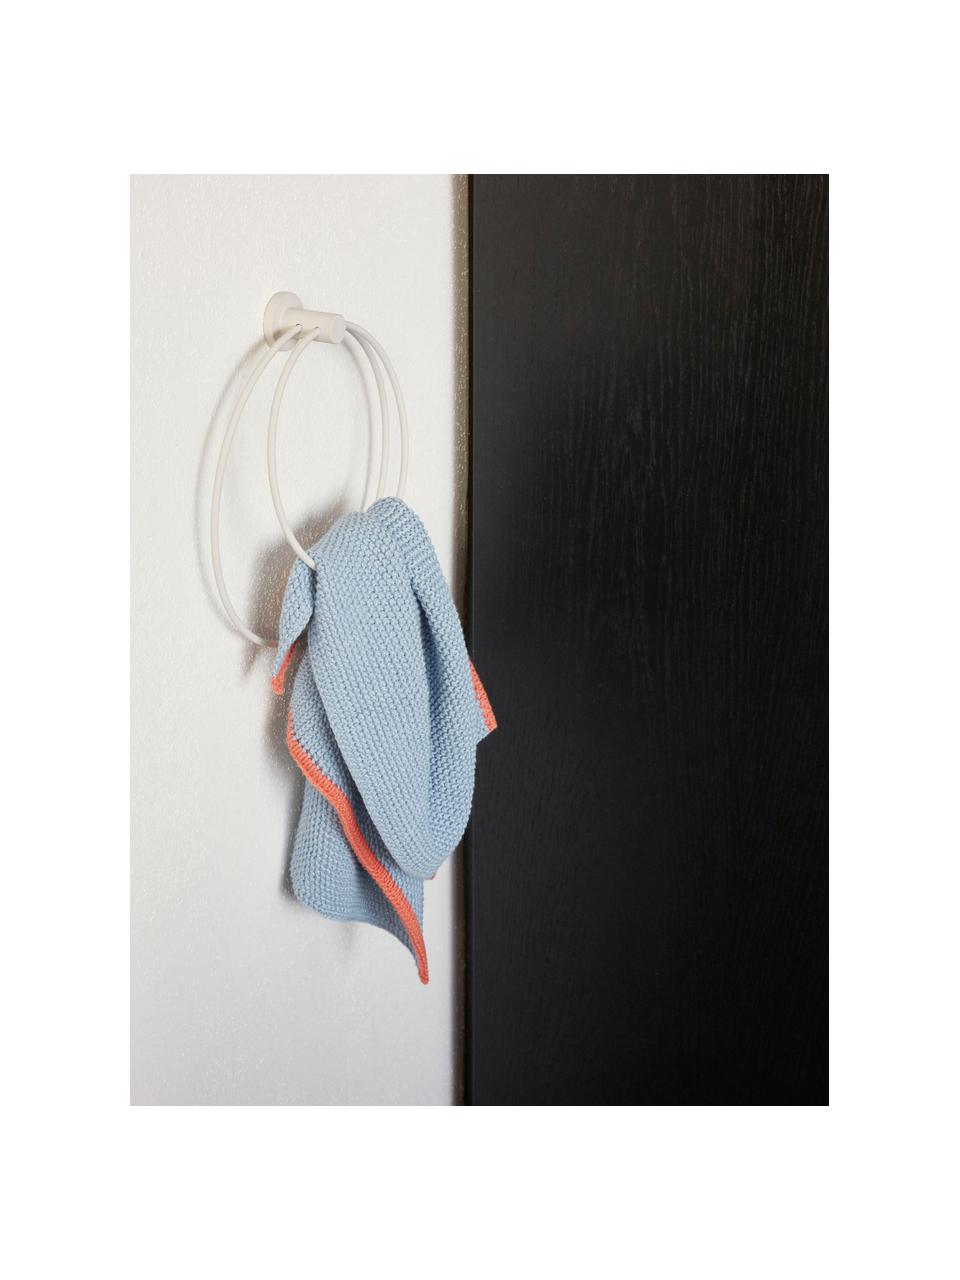 Wand-Handtuchhalter Loop aus Metall, Metall, beschichtet, Hellgrau, B 26 x H 23 cm